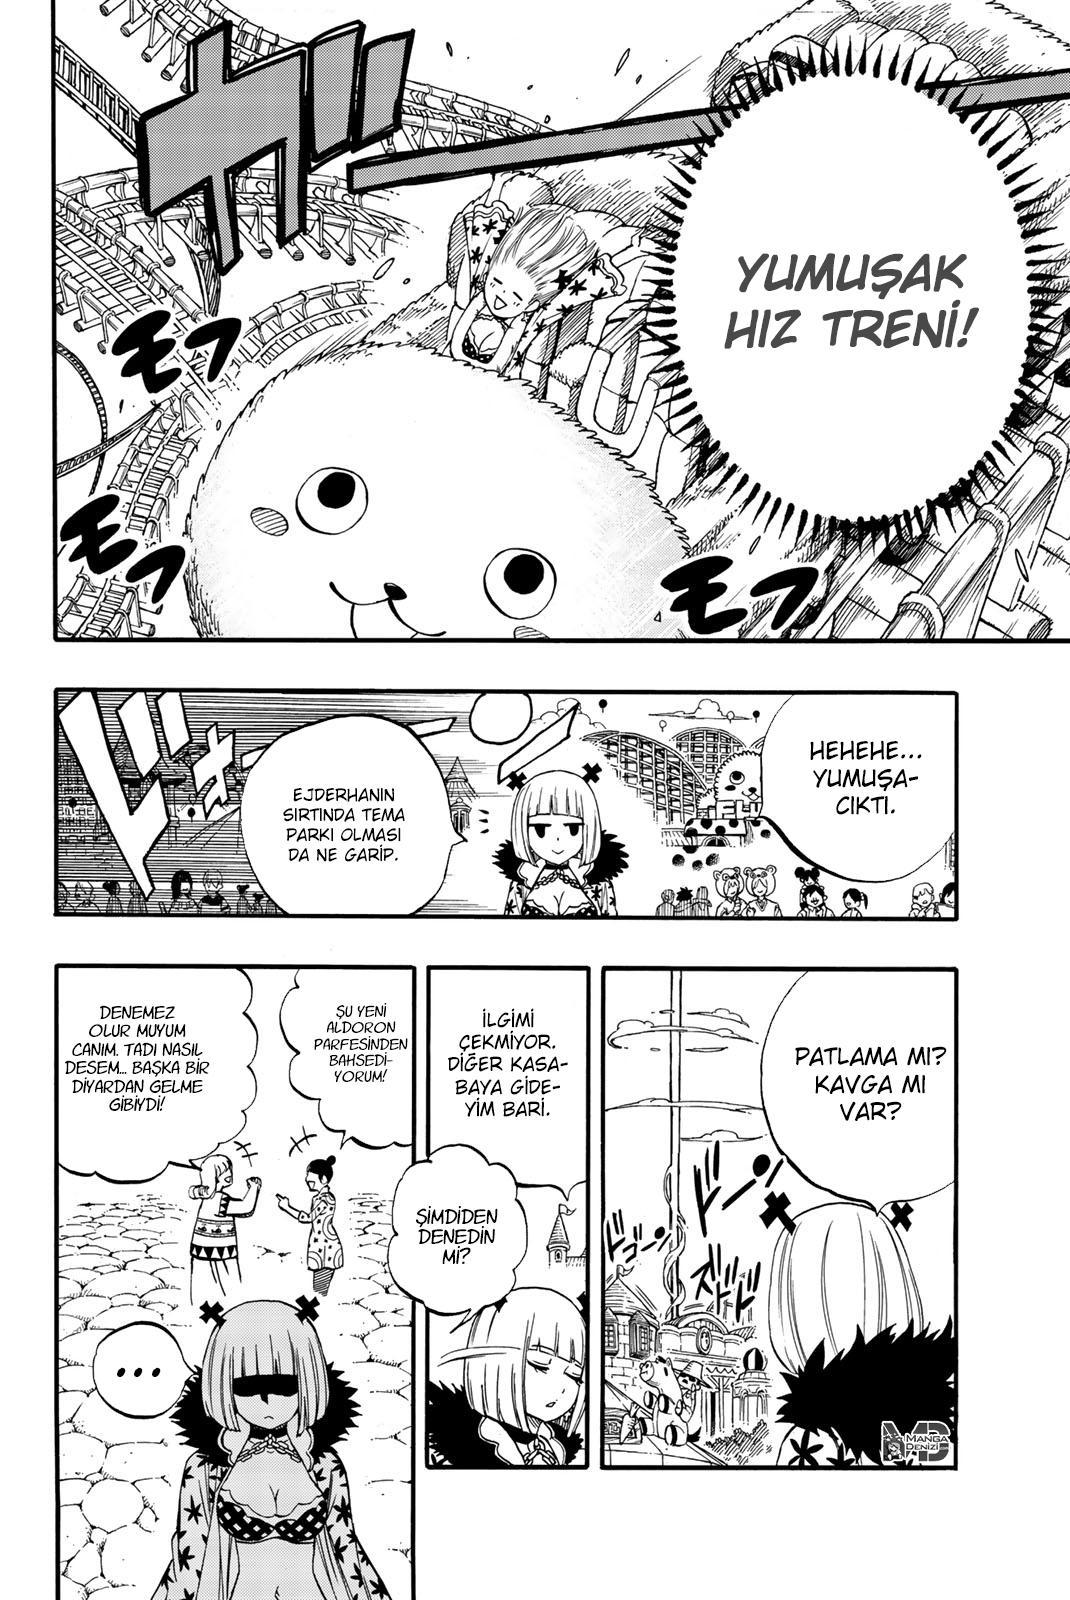 Fairy Tail: 100 Years Quest mangasının 063.5 bölümünün 3. sayfasını okuyorsunuz.